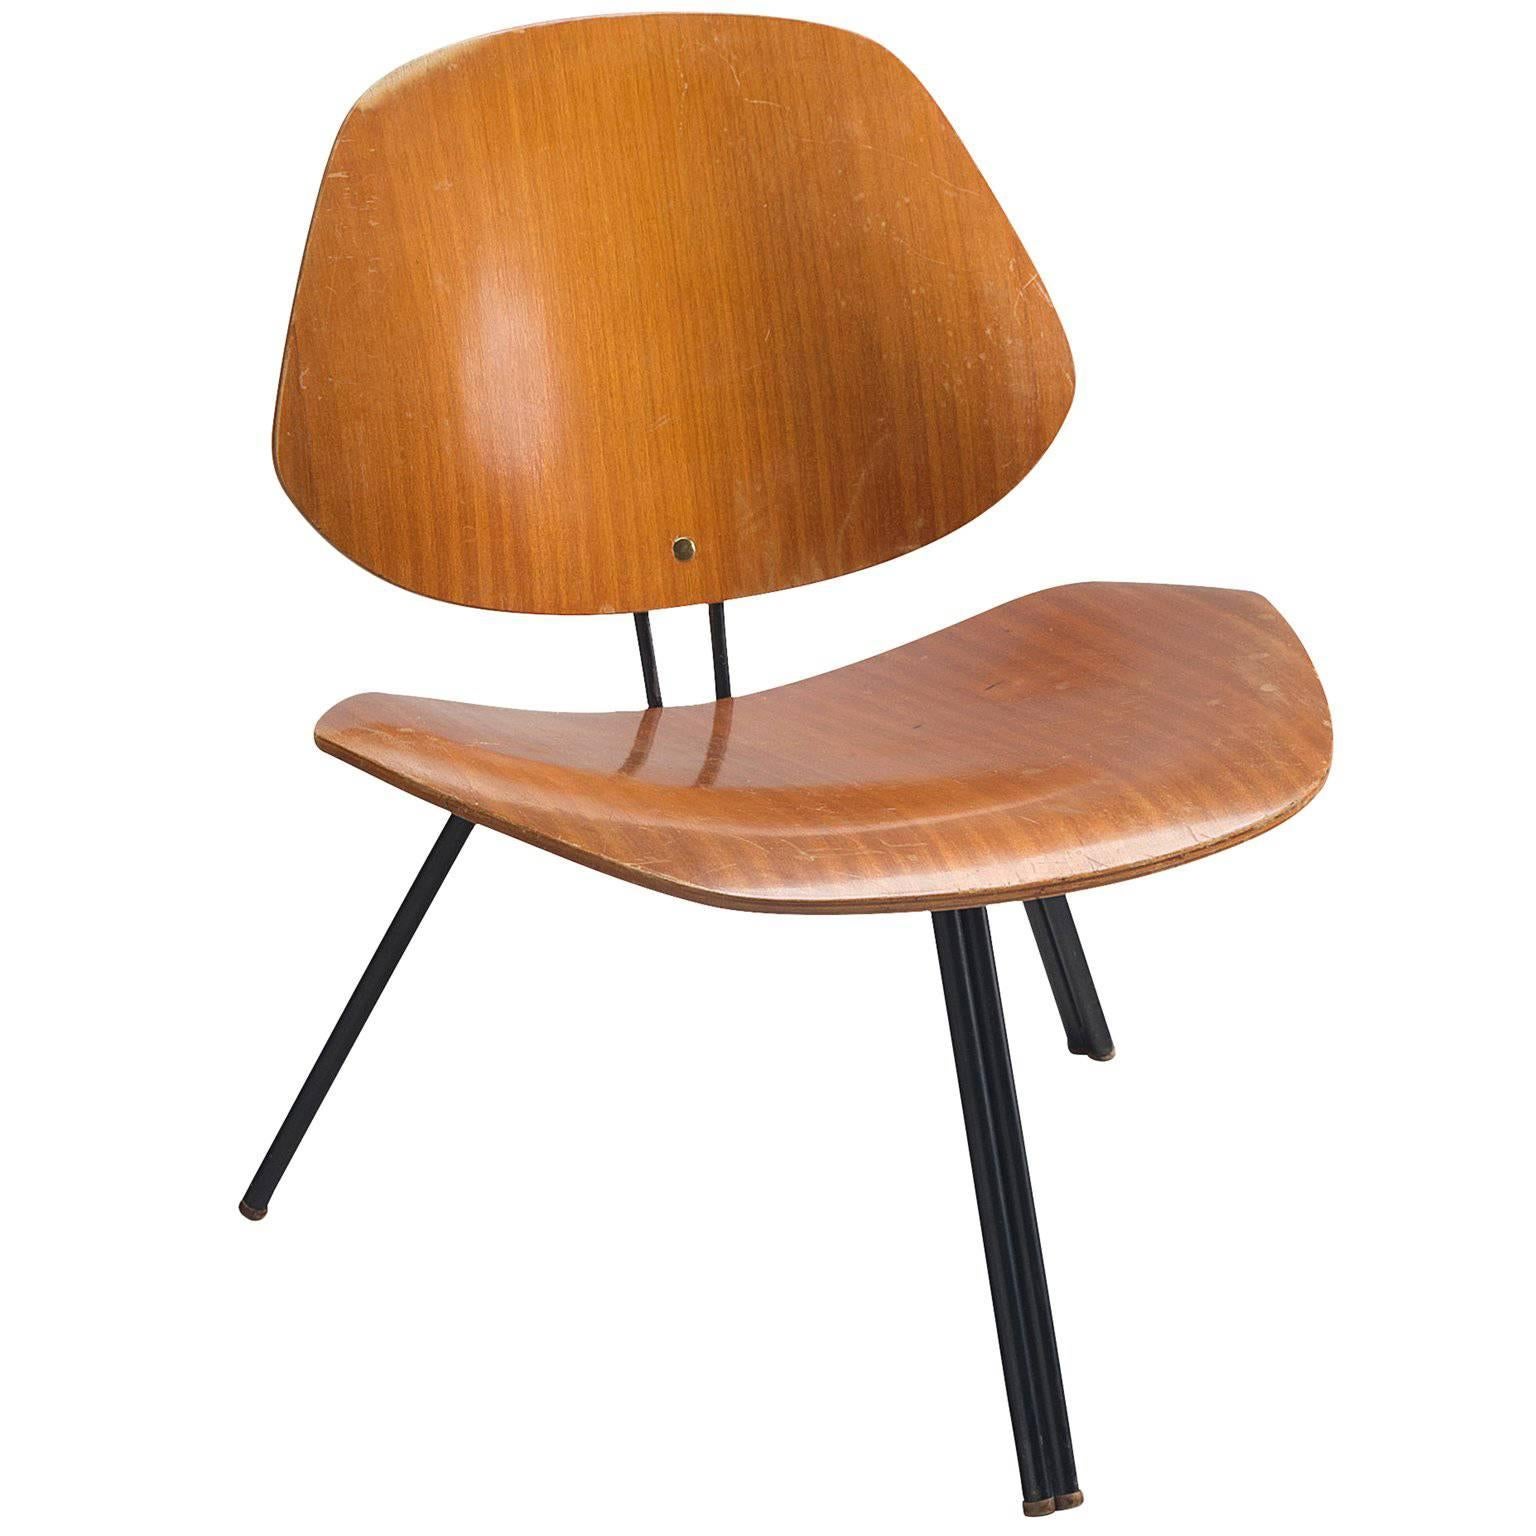 Osvaldo Borsani for Tecno 'P31' Chair, 1957